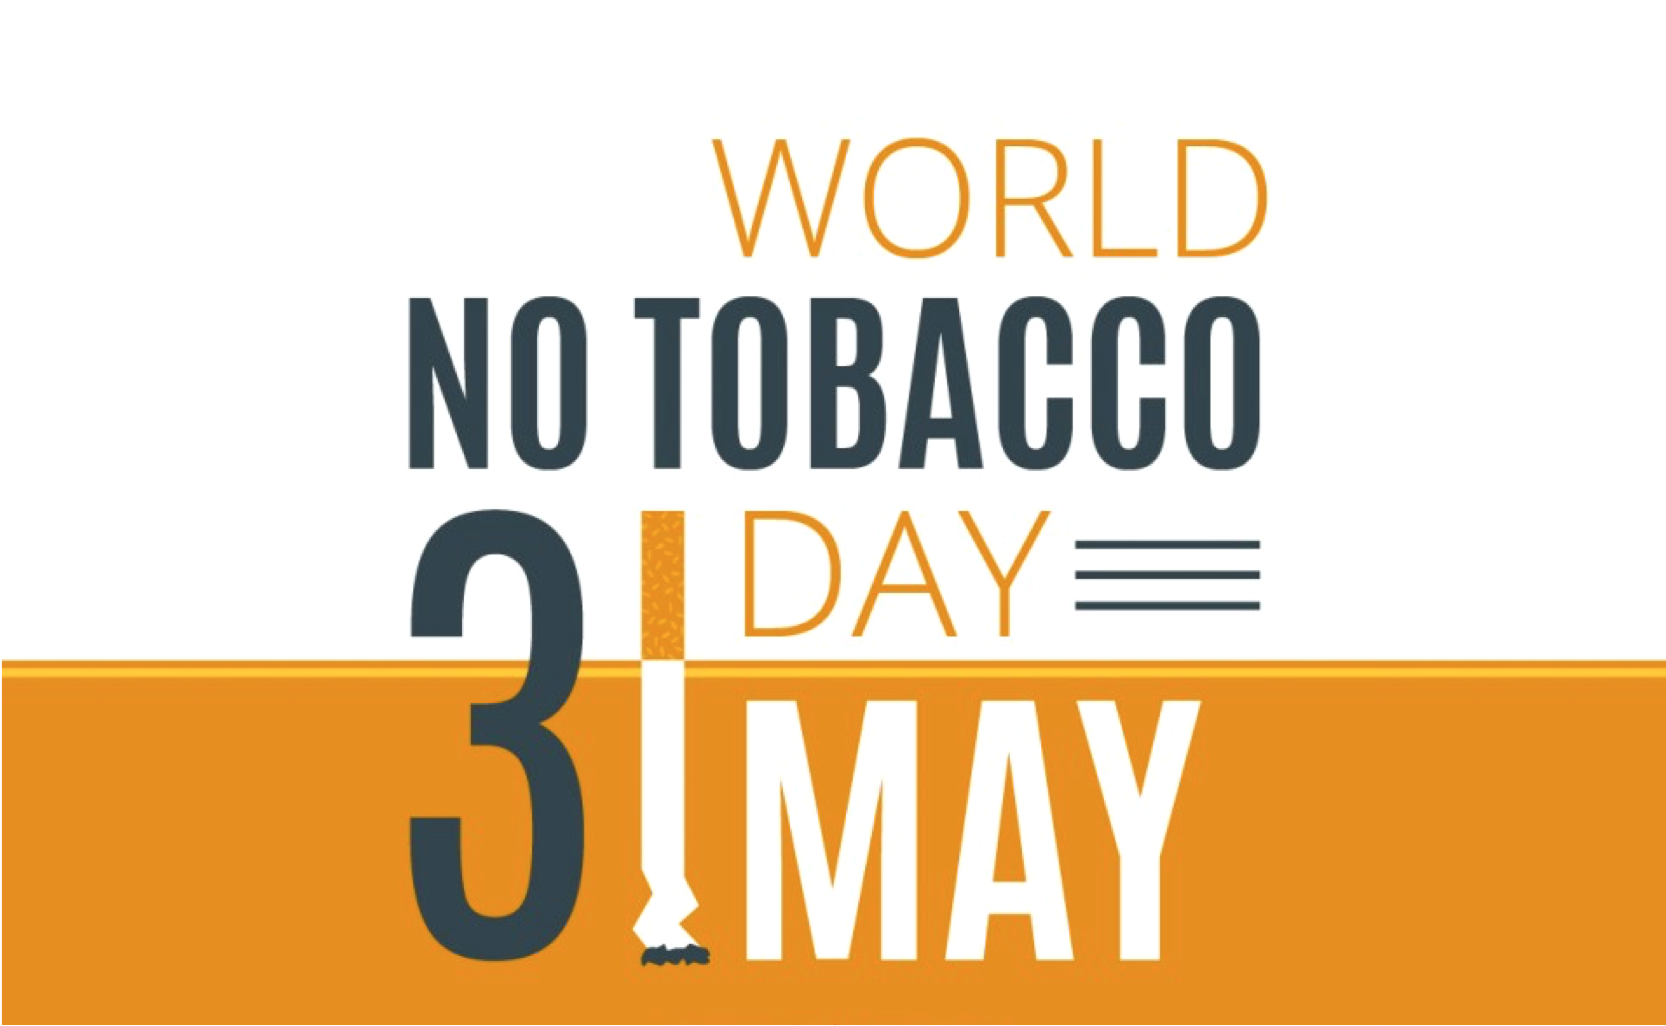 31 May: World No Tobacco Day